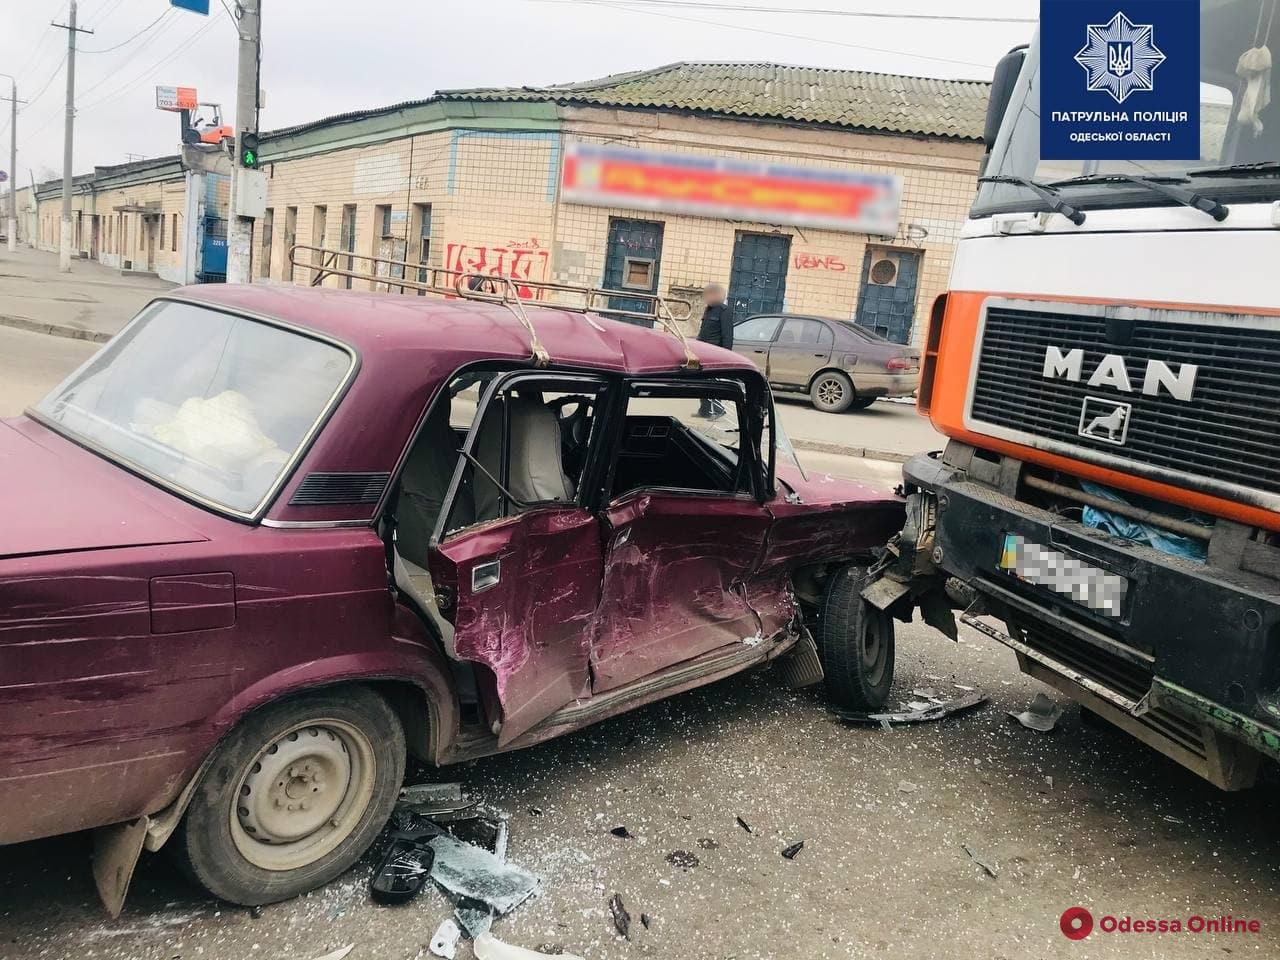 На Николаевской дороге столкнулись легковушка, грузовик и внедорожник — есть пострадавший